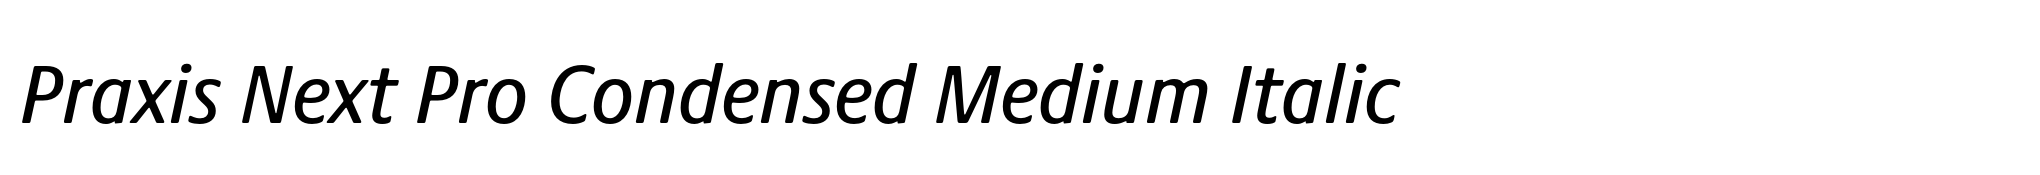 Praxis Next Pro Condensed Medium Italic image